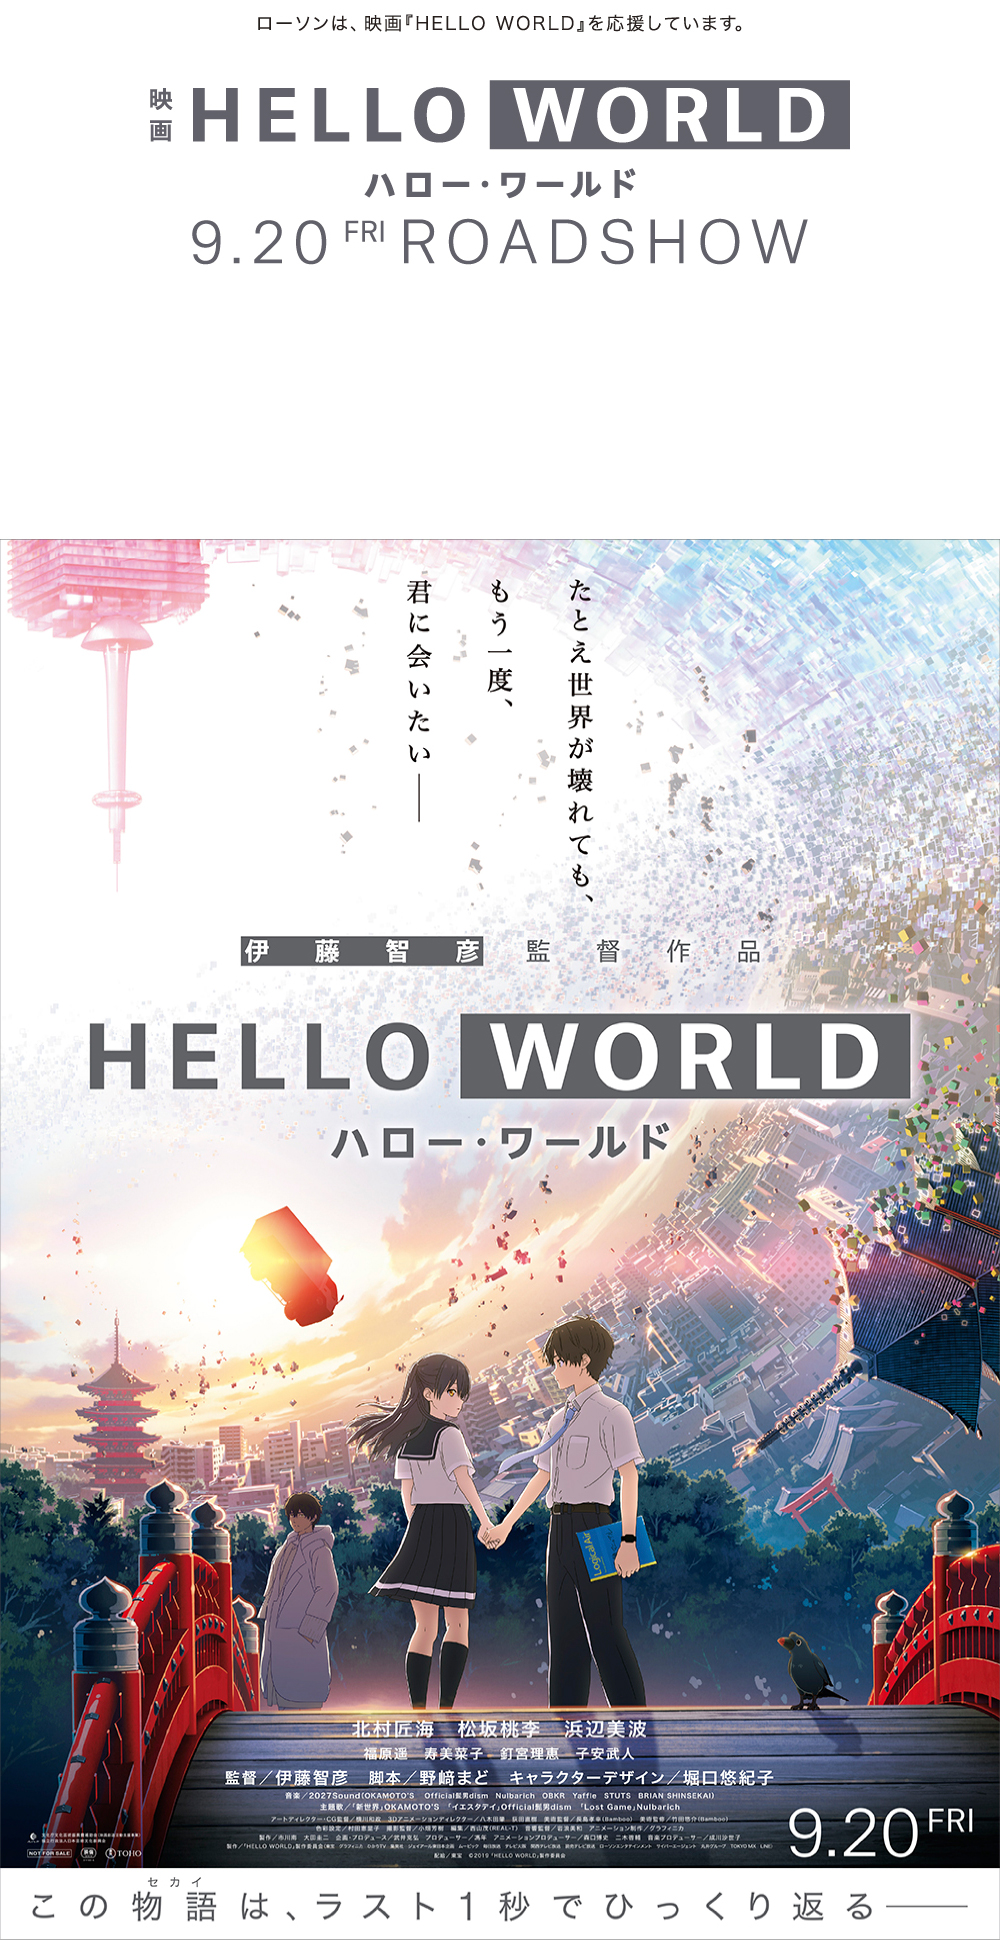 ローソンは、映画「HELLO WORLD」を応援しています。